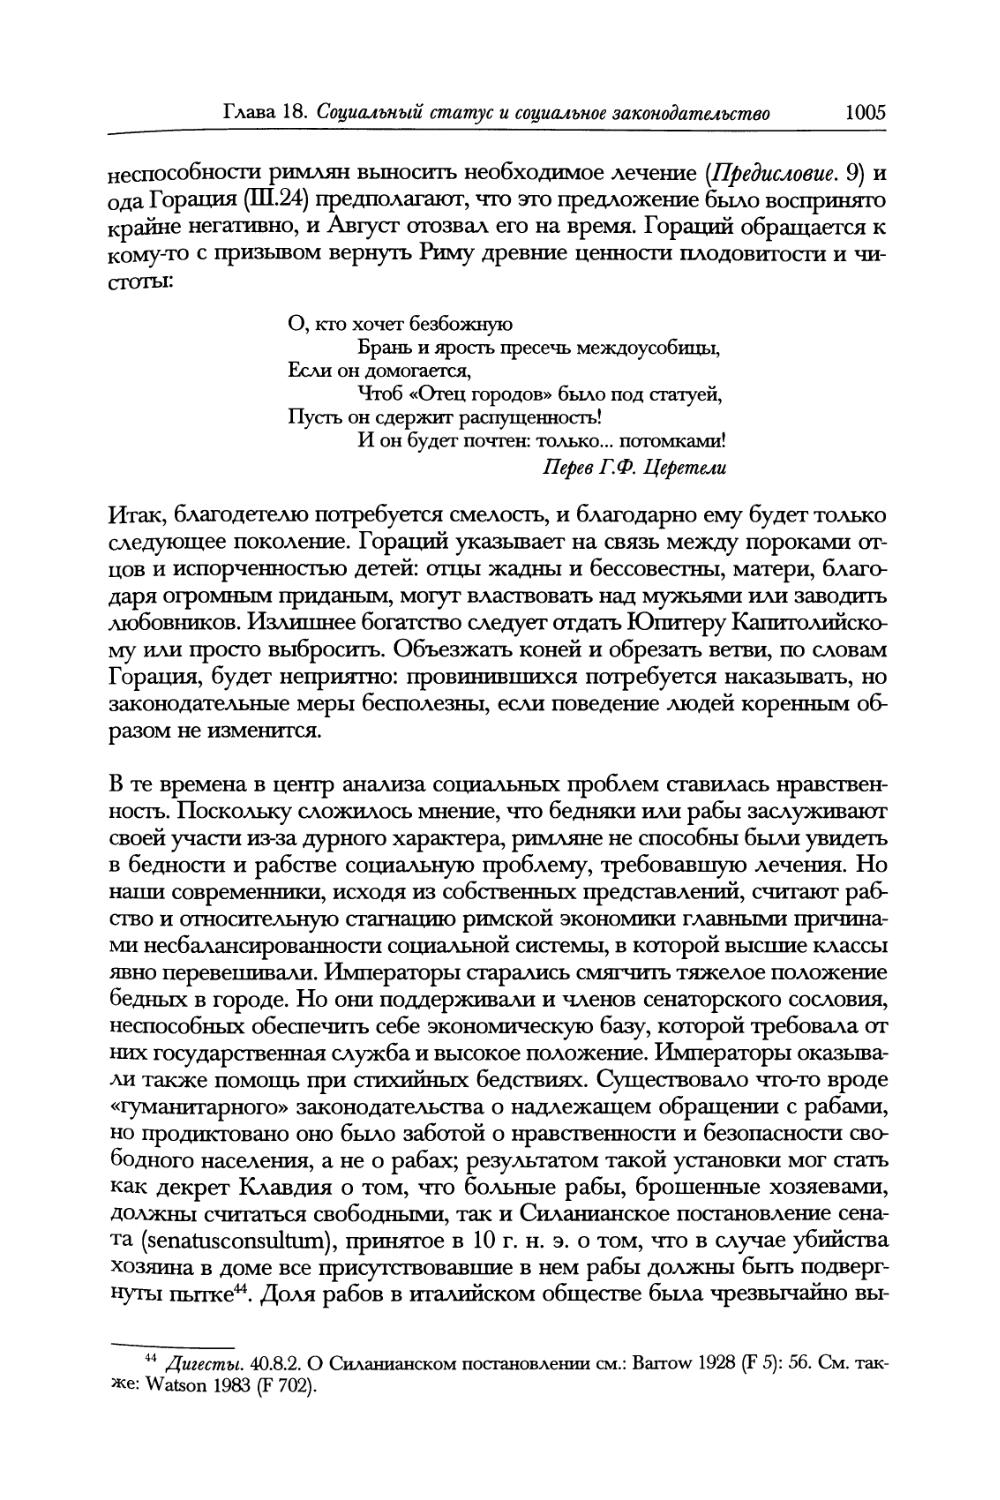 IV. Социальное законодательство Августа и Юлиев—Клавдиев